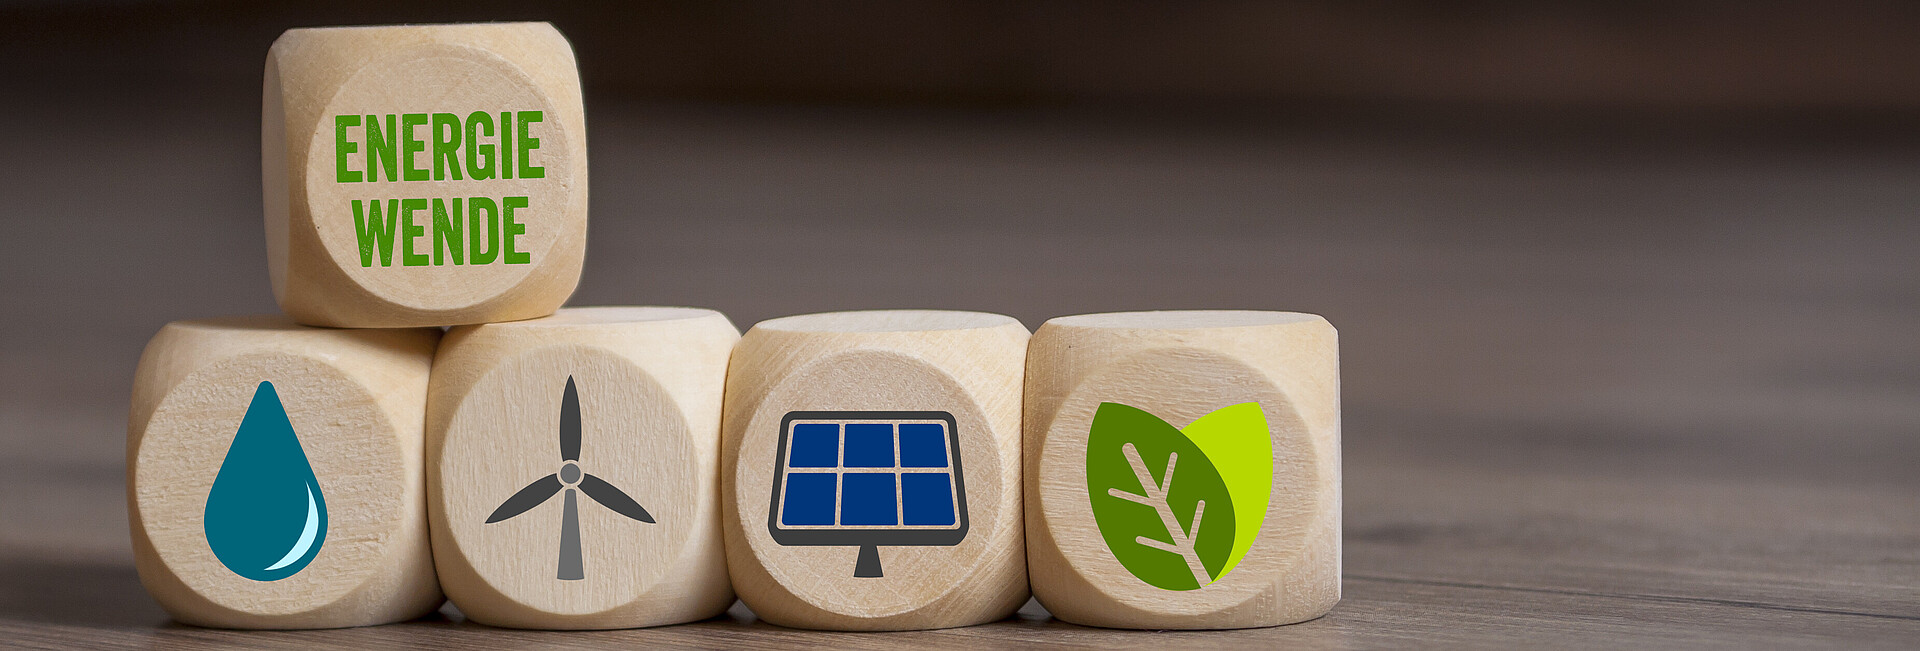 Symbolbild Energiewende; verschiedene Würfel liegen auf dem Tisch und zeigen Symbole für Windktaft, Wasserkraft, Solarenergie, Erdwärme und Biomasse